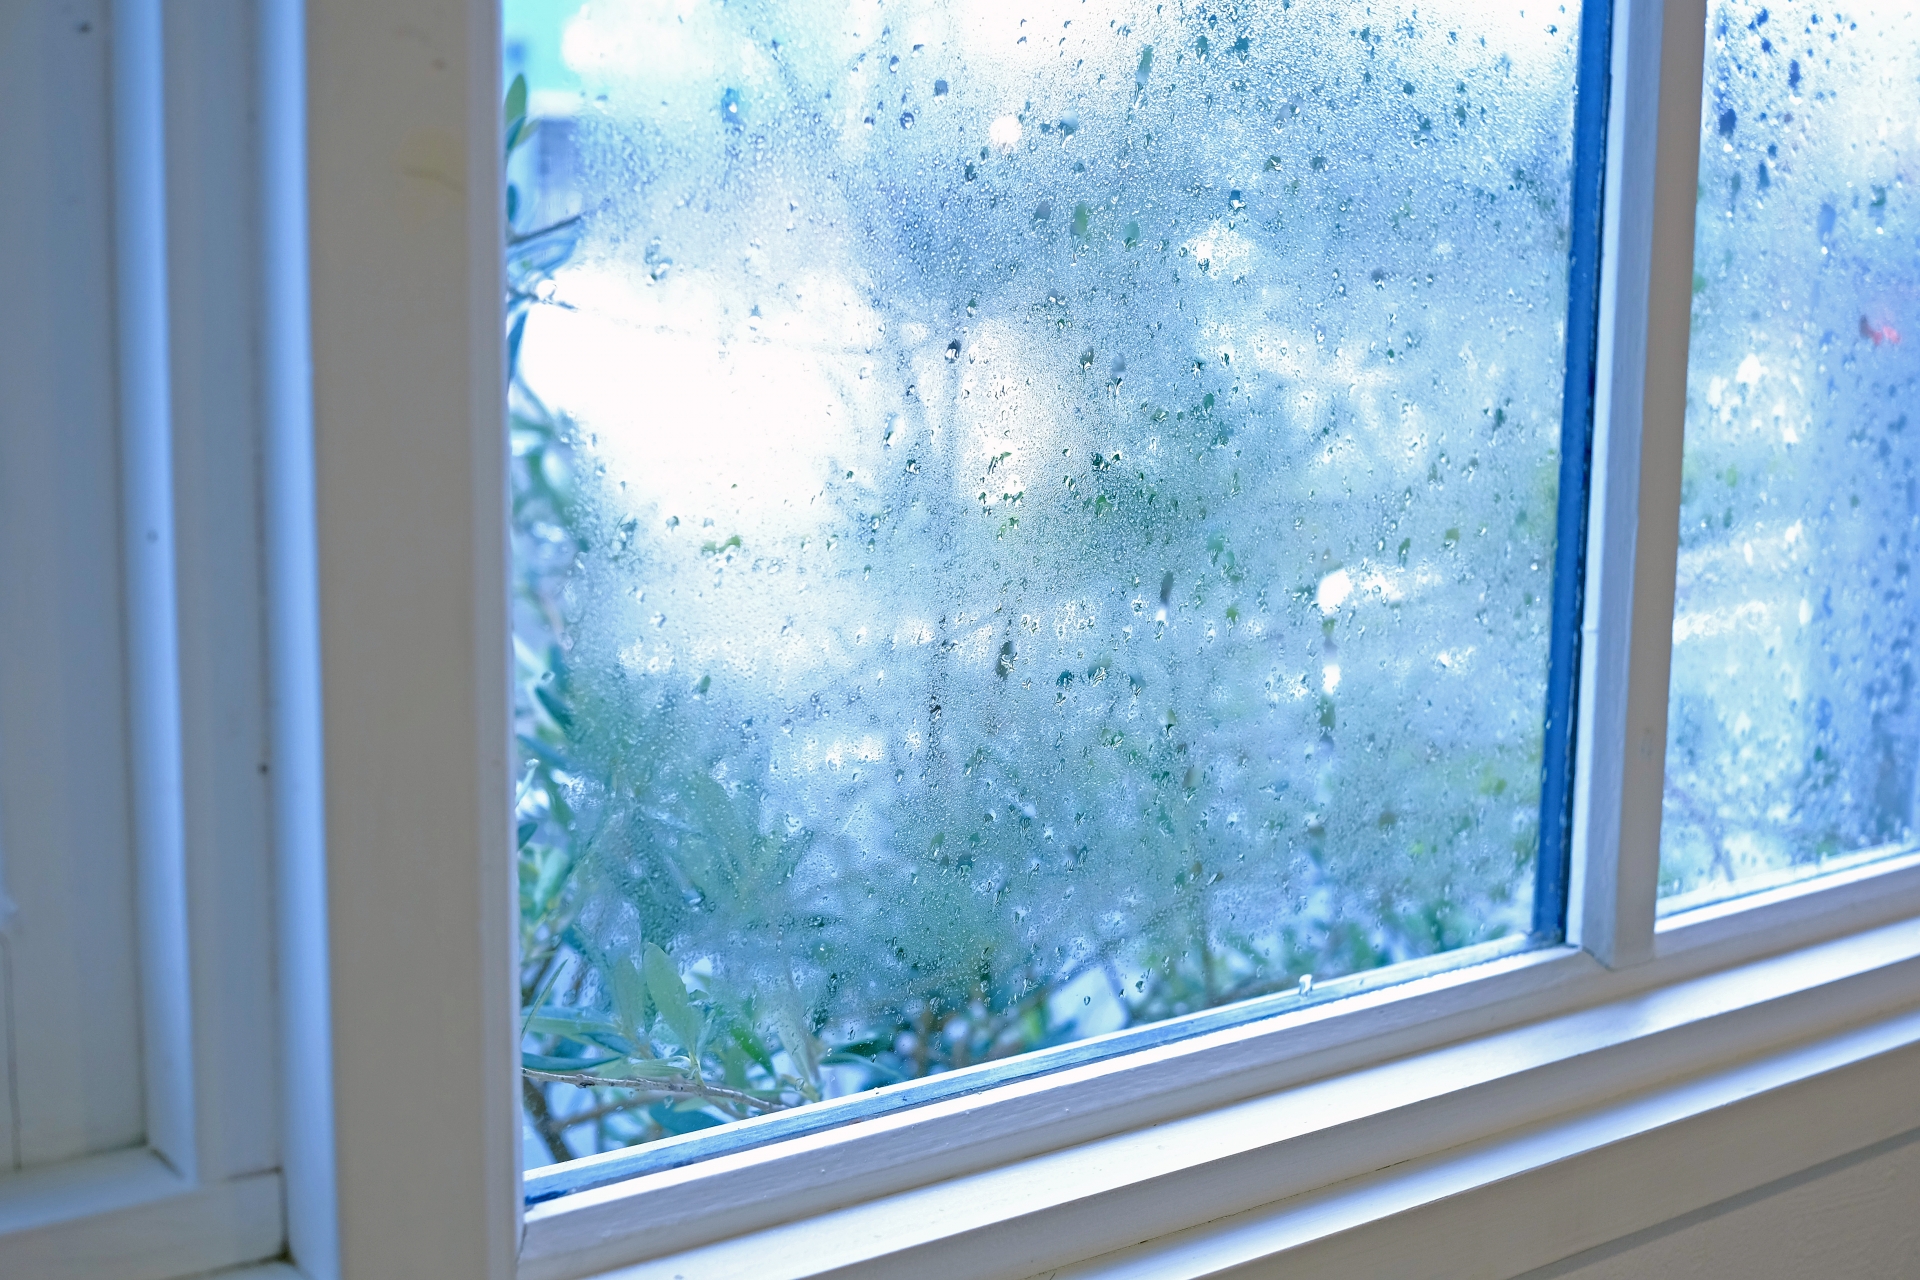 大寒時期。窓の結露対策と掃除の工夫